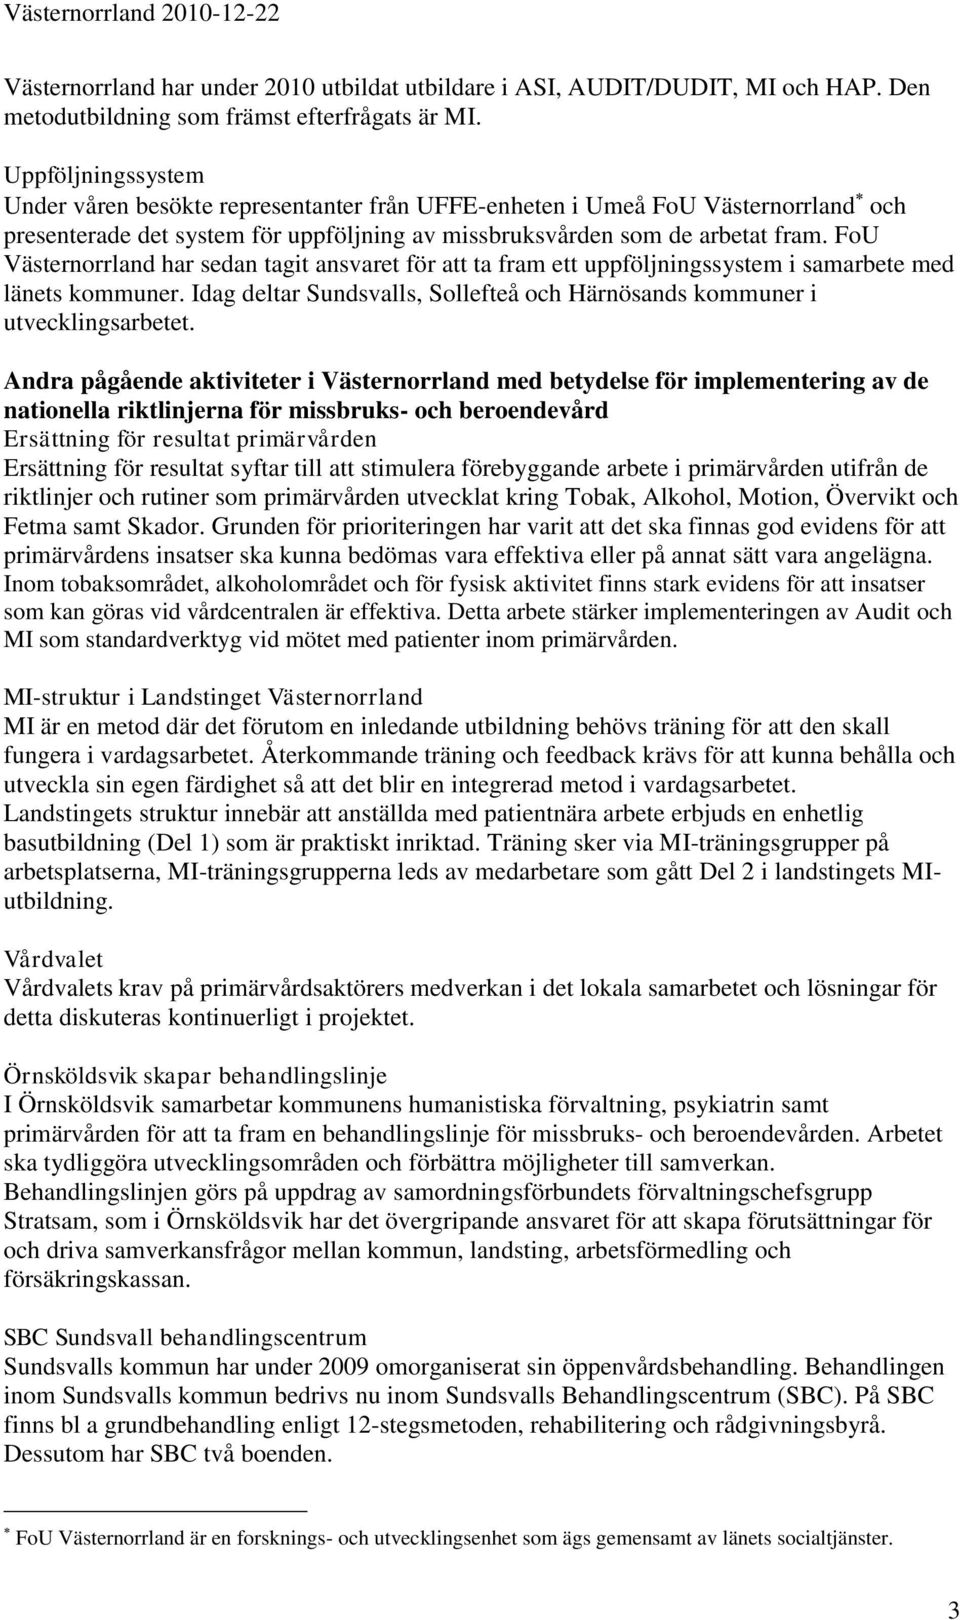 FoU Västernorrland har sedan tagit ansvaret för att ta fram ett uppföljningssystem i samarbete med länets kommuner. Idag deltar Sundsvalls, Sollefteå och Härnösands kommuner i utvecklingsarbetet.